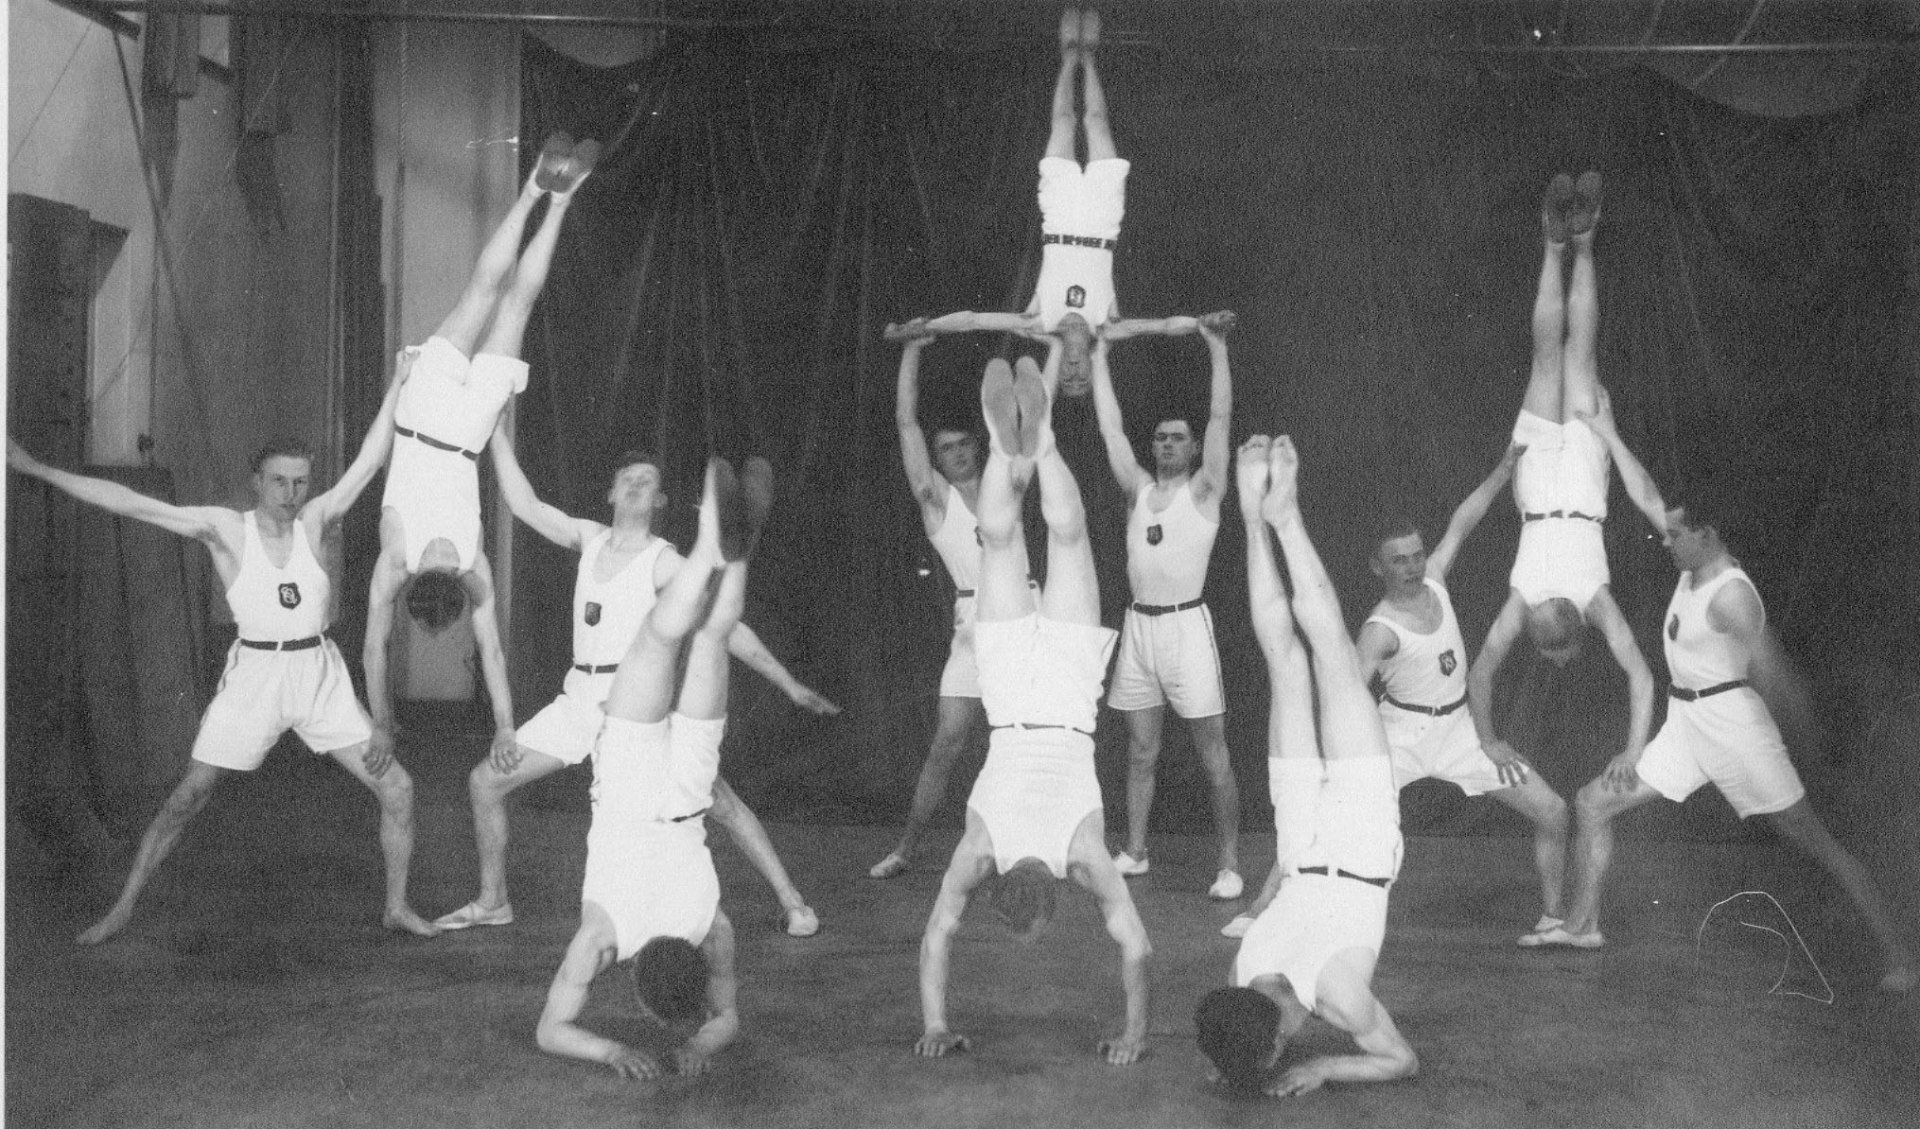 Herengroep met grondoefening tijdens de jaarlijkse uitvoering van de gymnastiekvereniging 'Olympia', 29-01-1942. Gemeentearchief Schouwen-Duiveland, Beeldbank Schouwen-Duiveland, nr A-3585